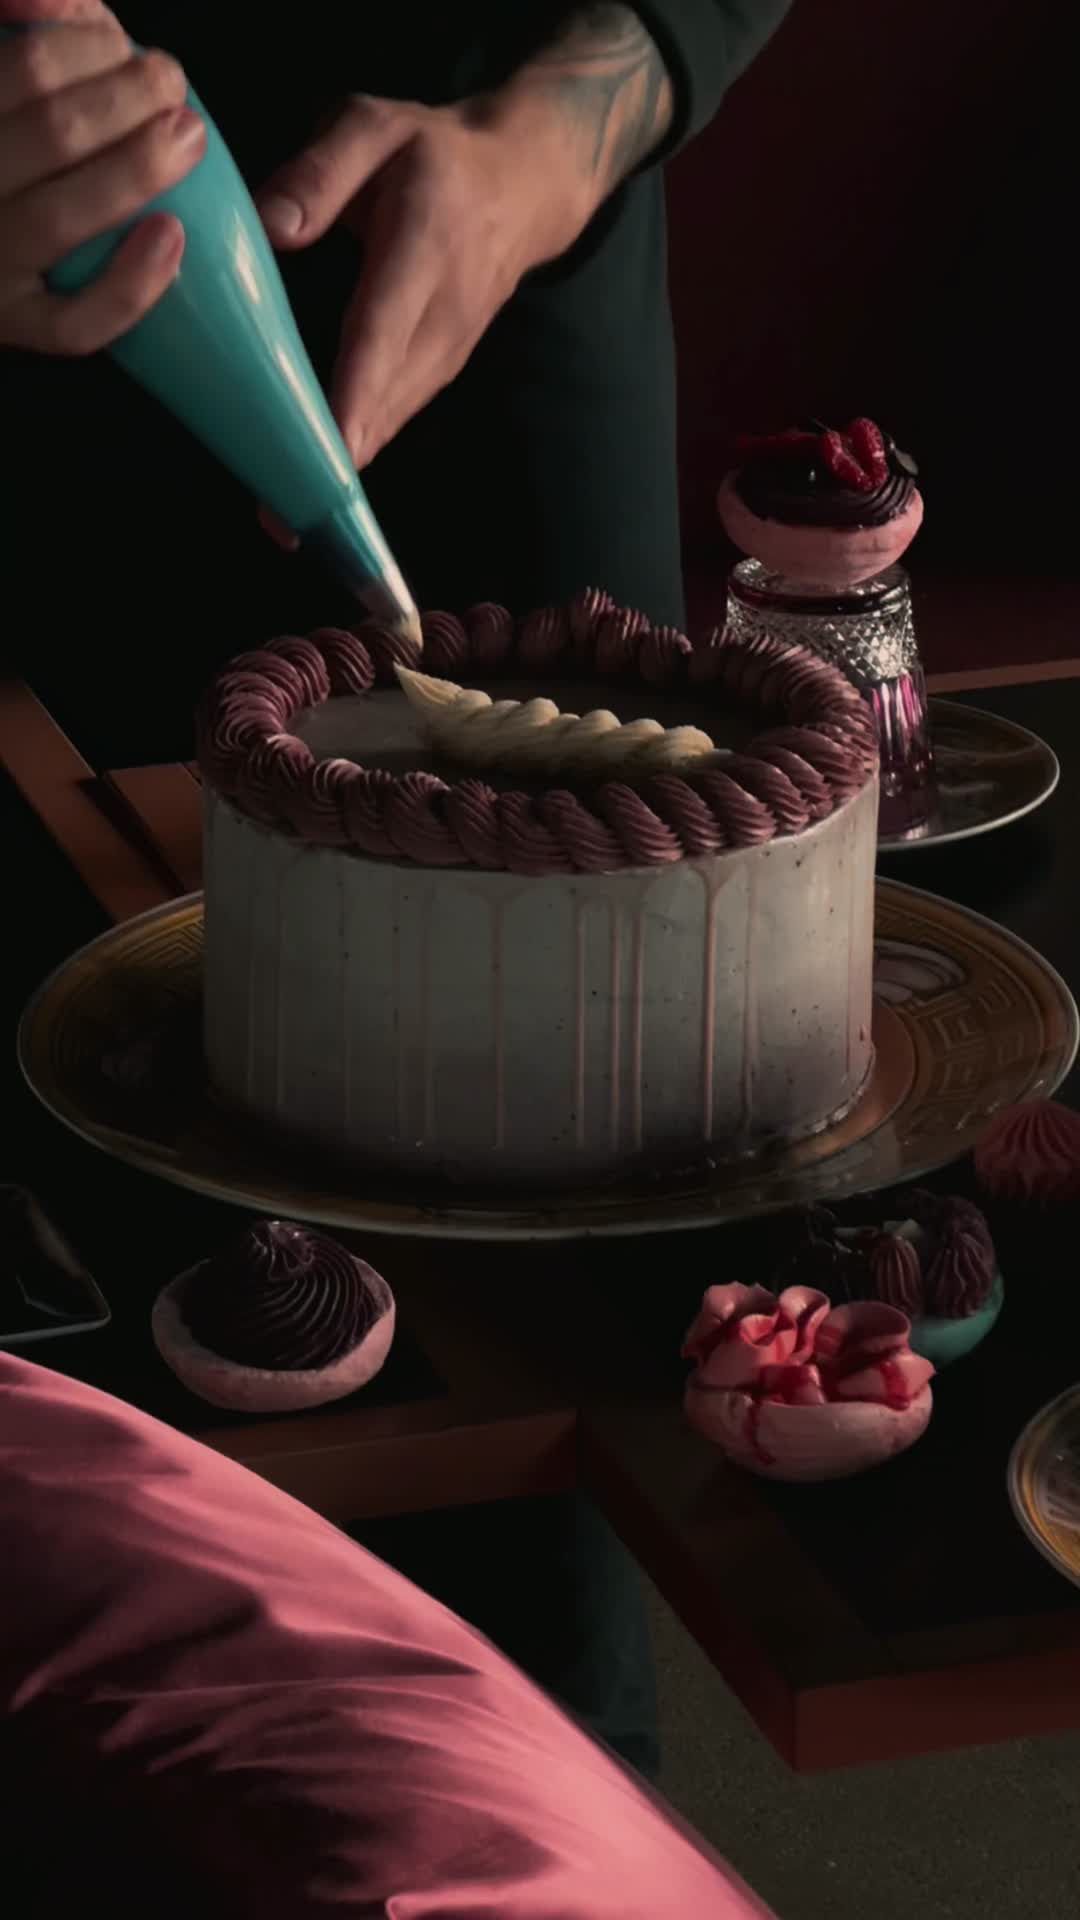 preview for Exclusieve achter de schermen-beelden zien van Let us eat cake?